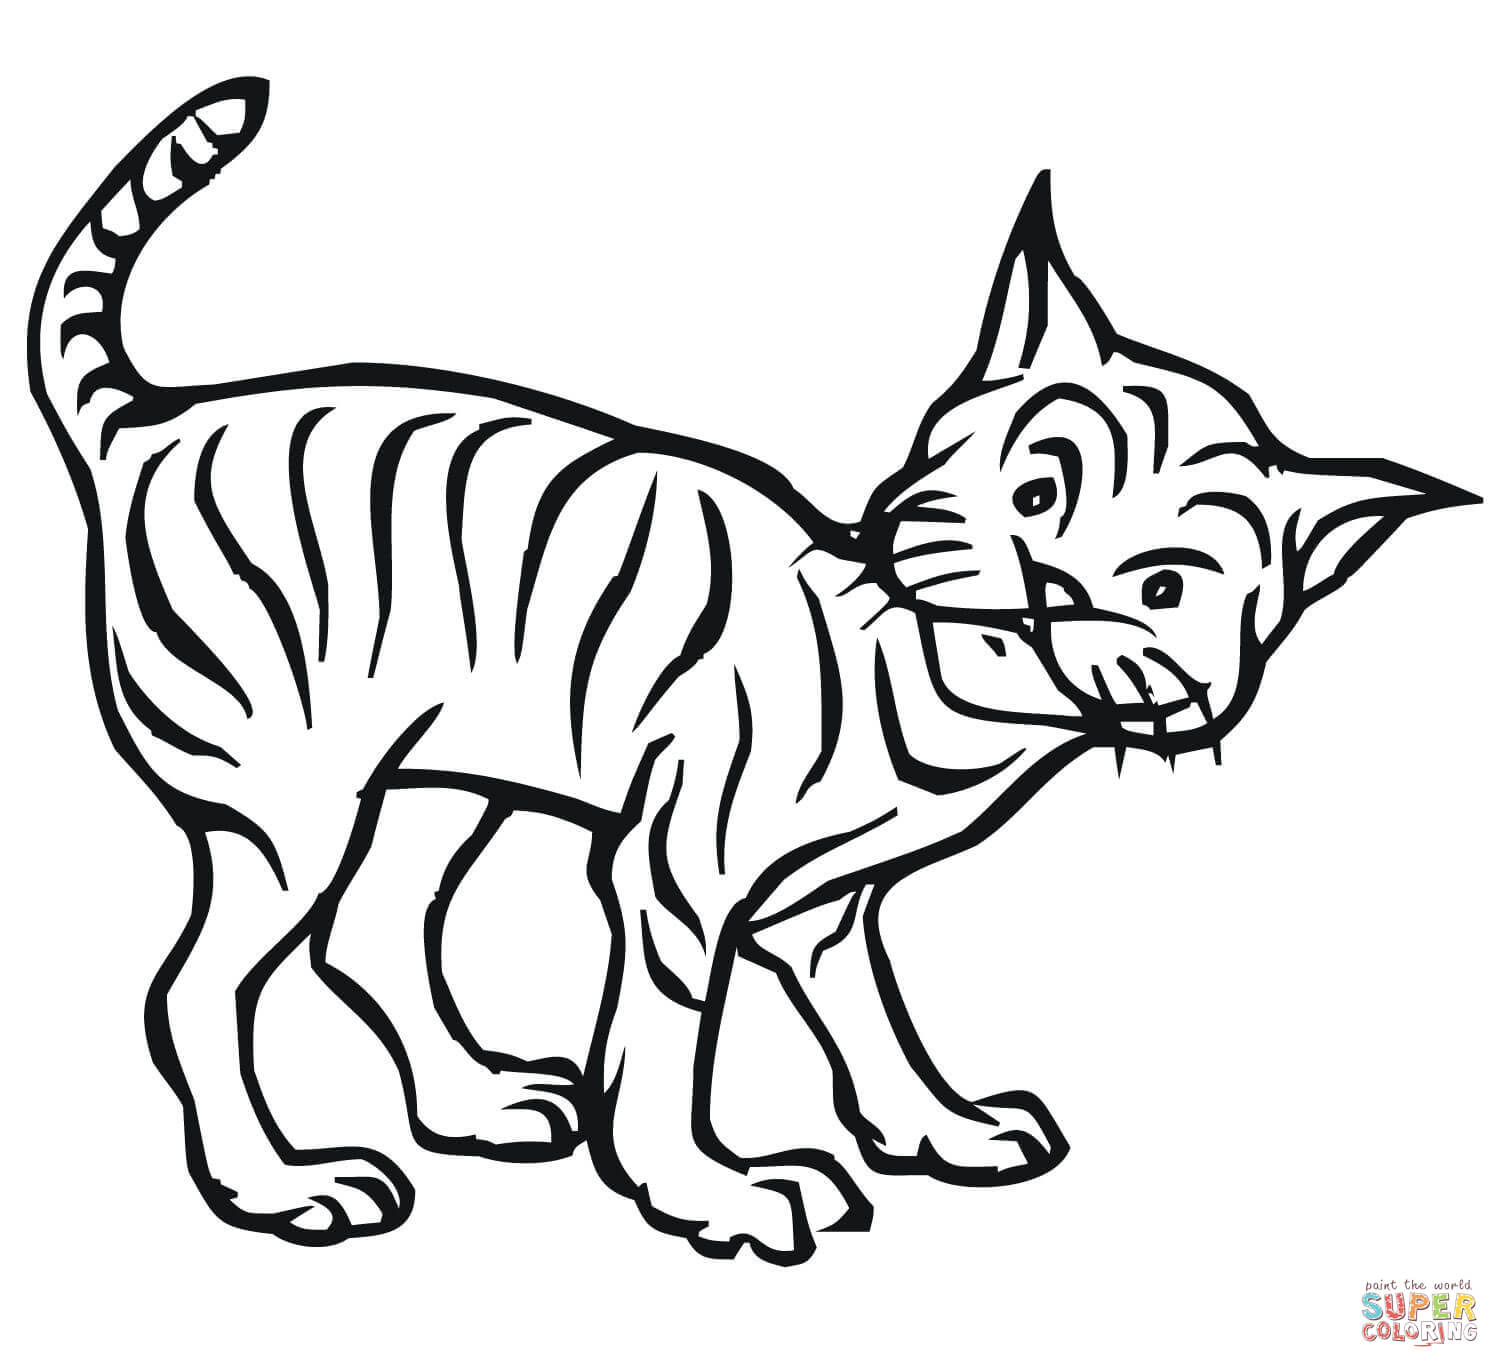 Bobcat coloring #15, Download drawings